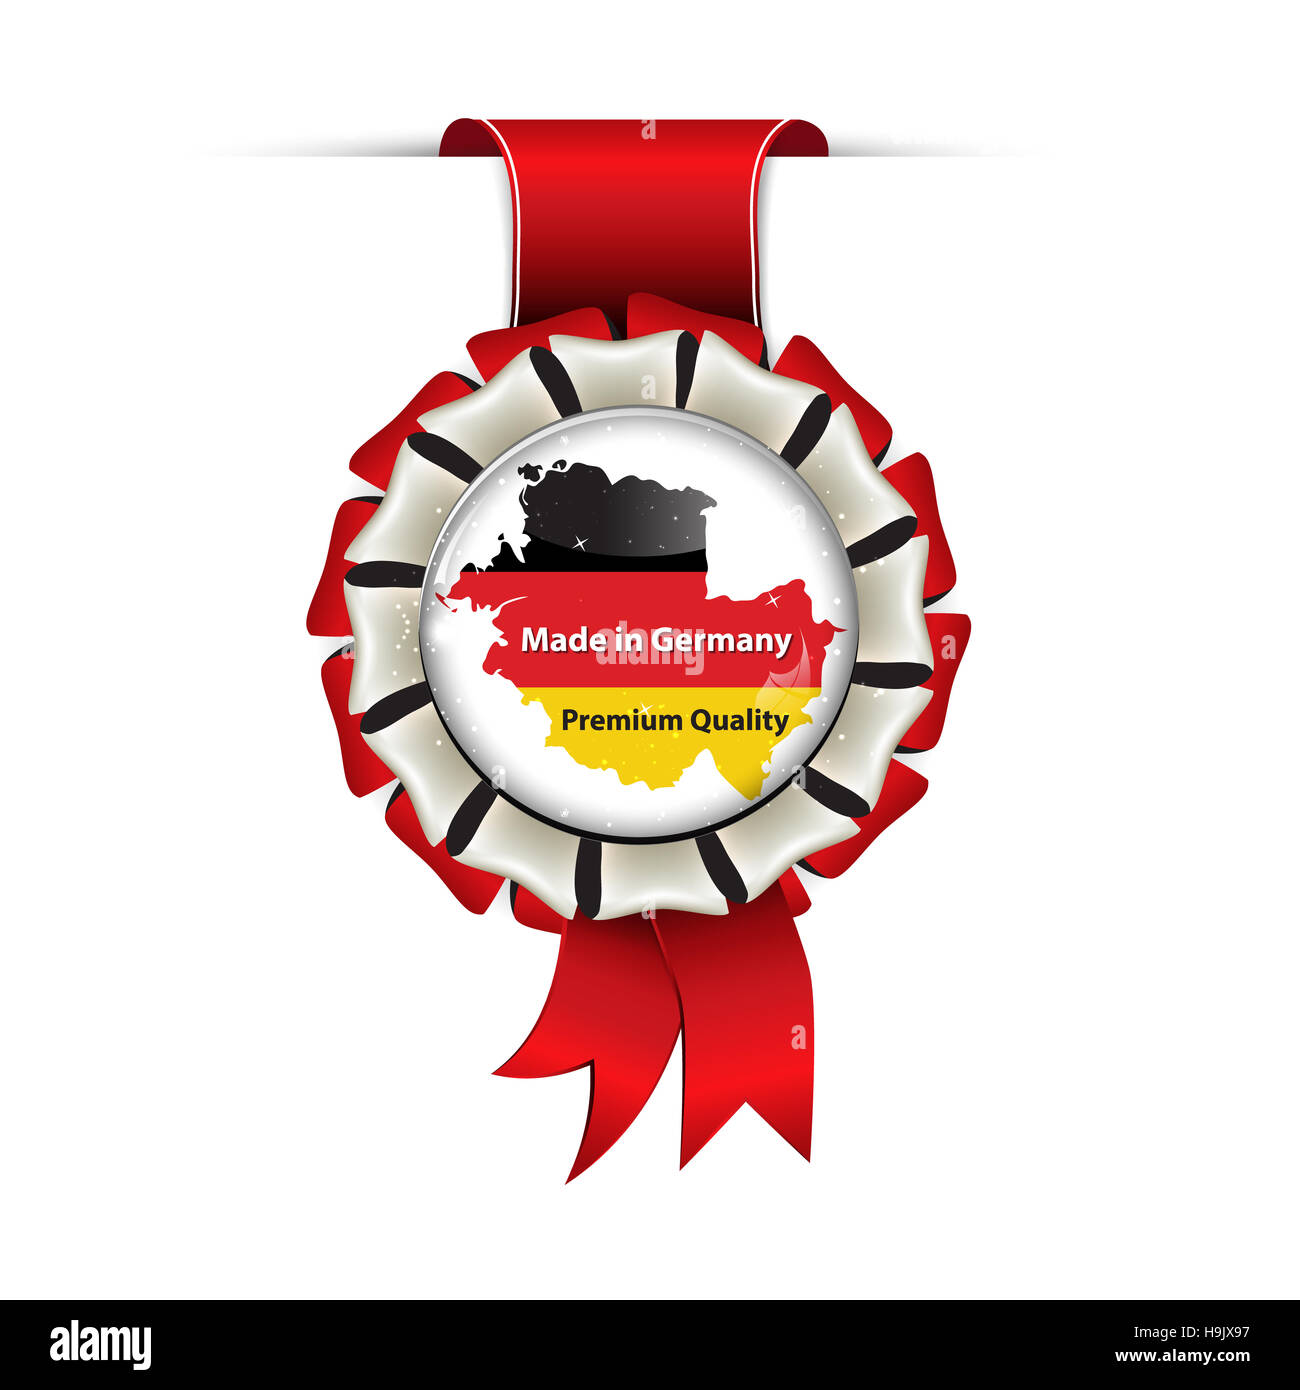 Made in Germany Premium-Qualität - Auszeichnung Band mit der Karte und Flagge Deutschlands Stockfoto